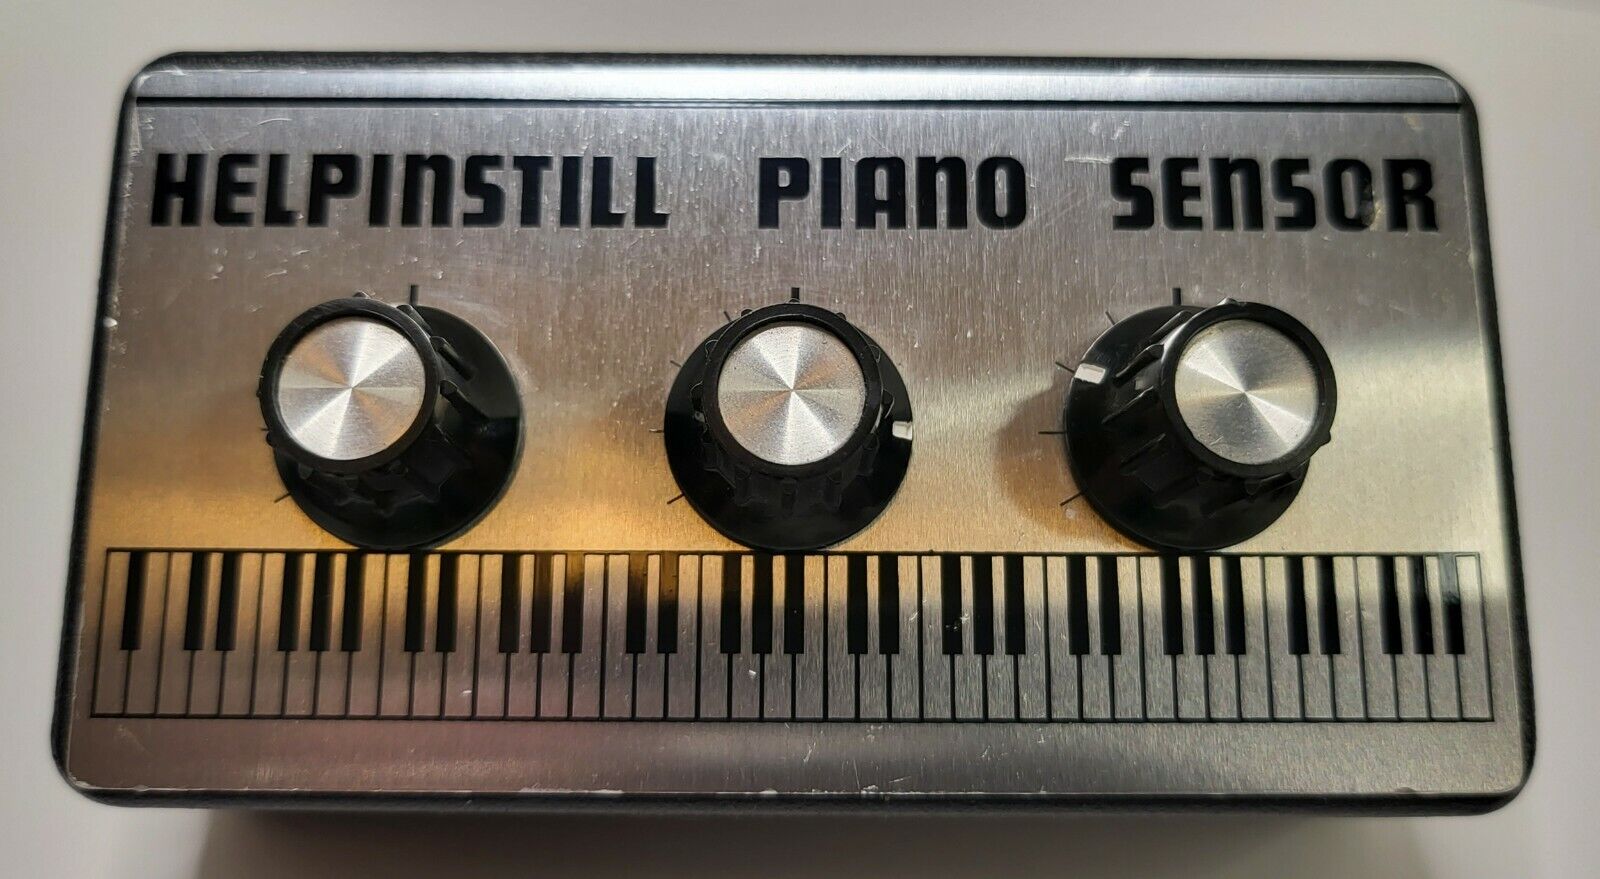 Helpinstill Piano Sensor Model 120 **vintage** **rare**